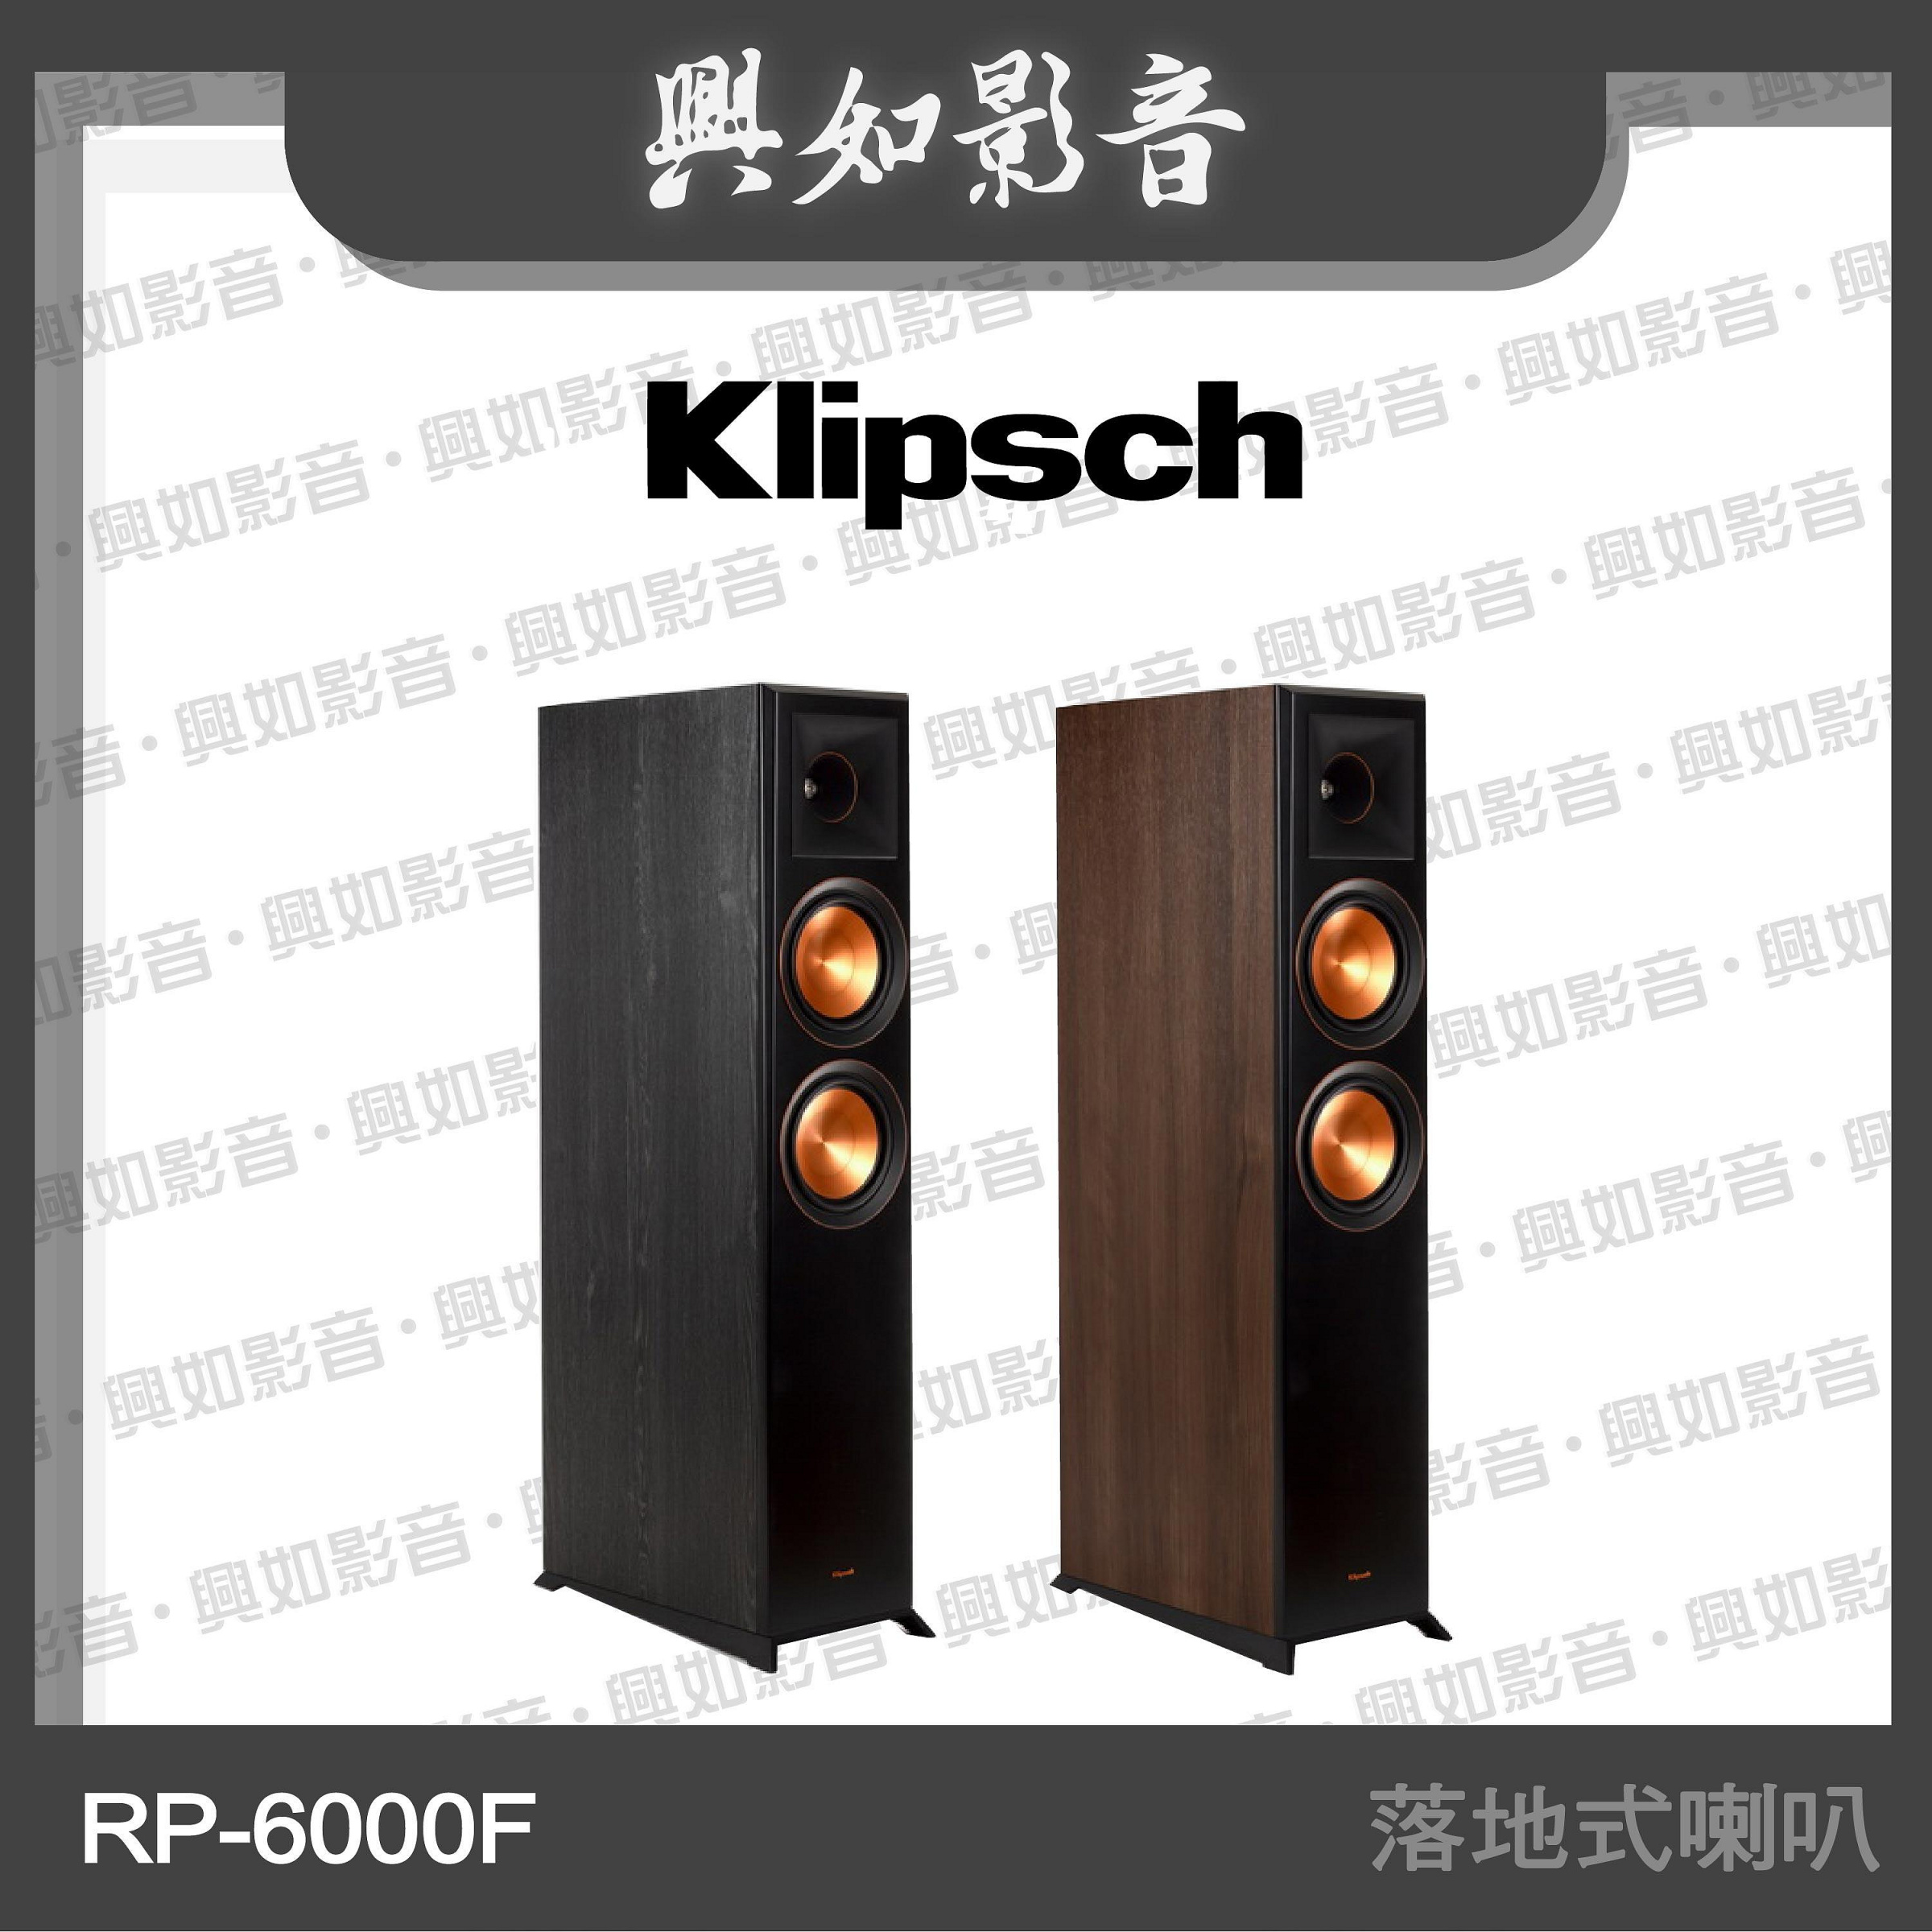 【興如】Klipsch RP-6000F 落地式喇叭 (2色) 另售 RP-8000F